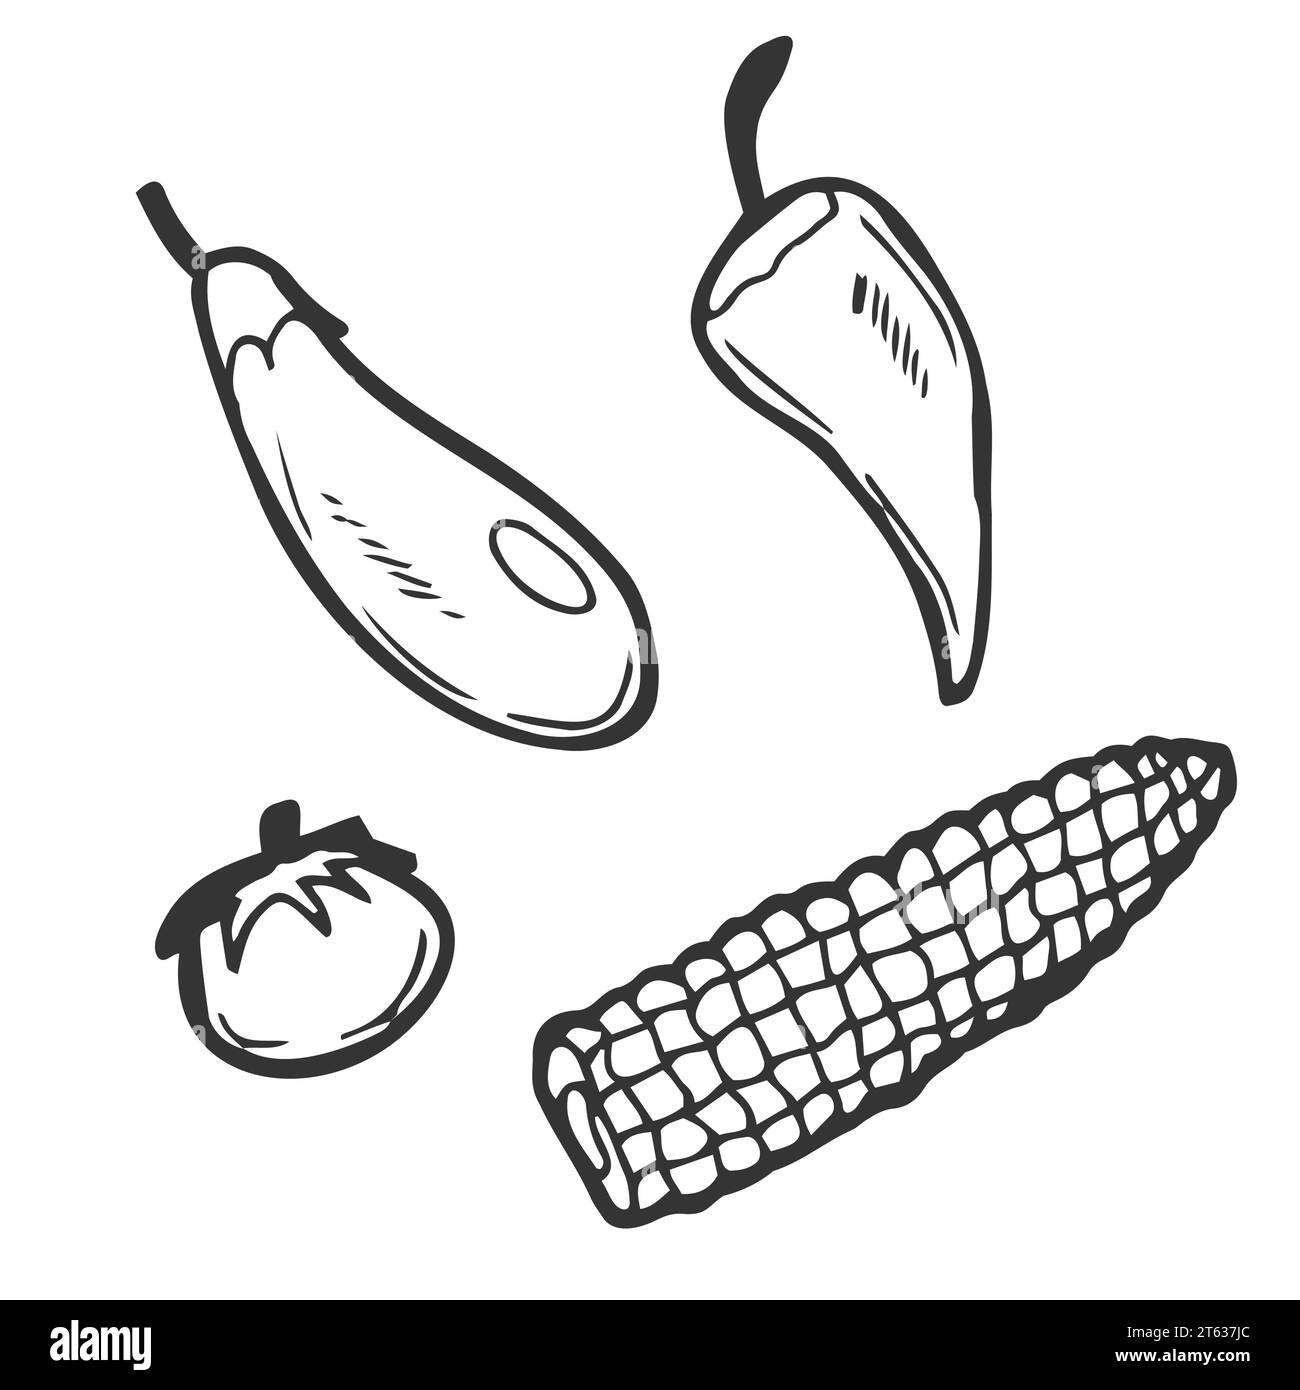 Collection de dessins de doodle de légumes. légumes tels que carotte, maïs, gingembre, champignon, concombre, chou pomme de terre etc Illustration de Vecteur